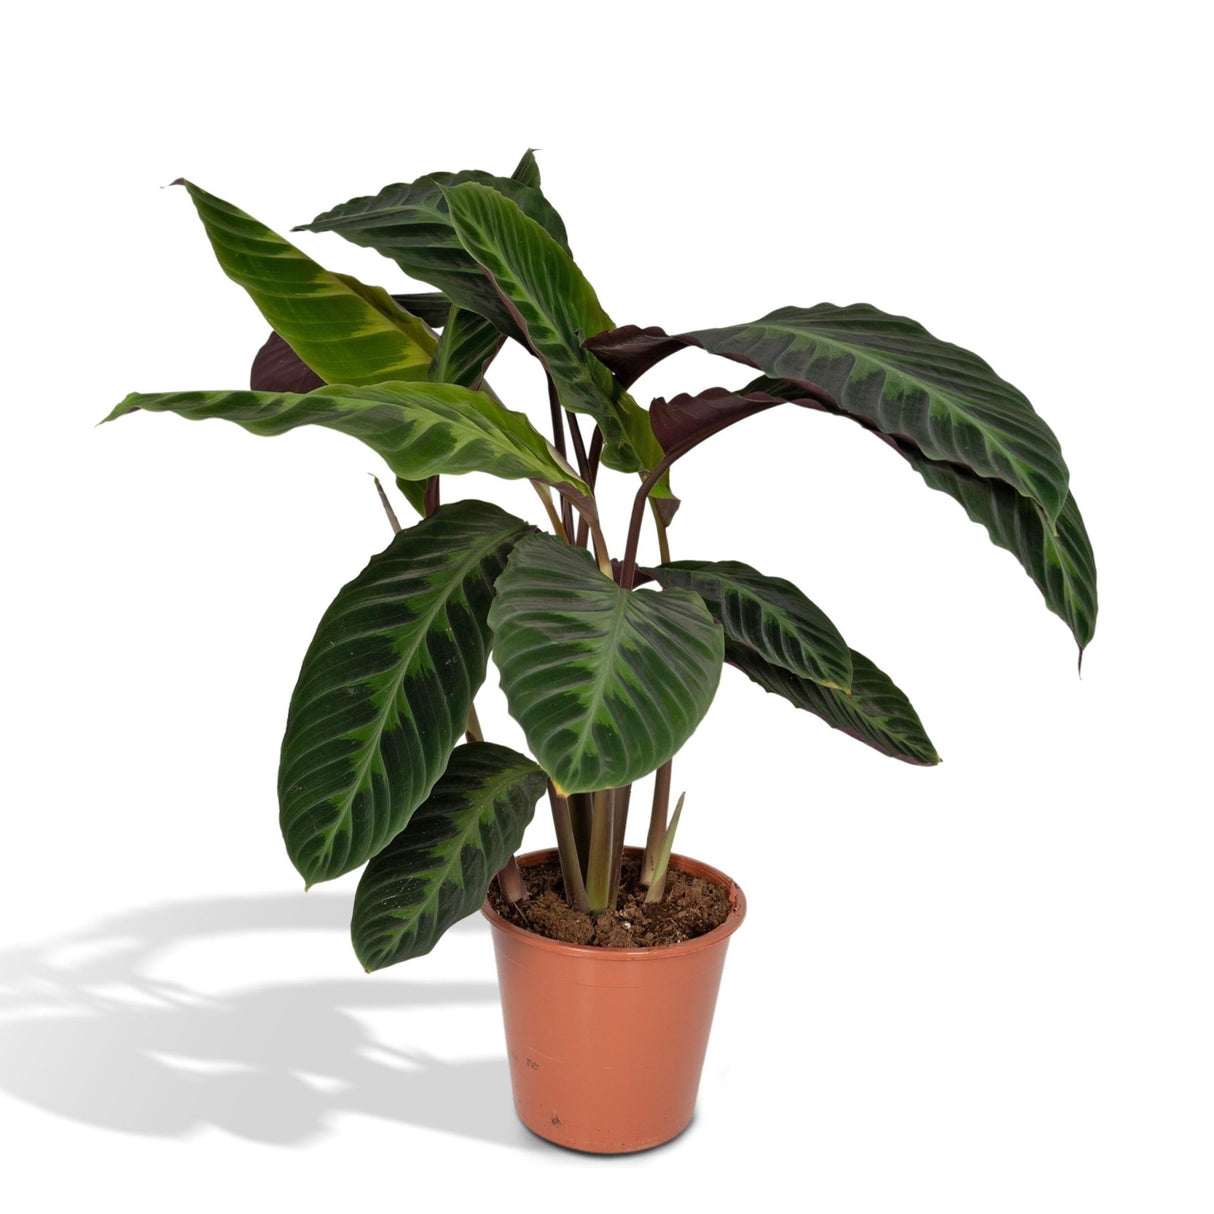 Livraison plante - Calathea Warscewiczii - h70cm, Ø19cm - grande plante d'intérieur